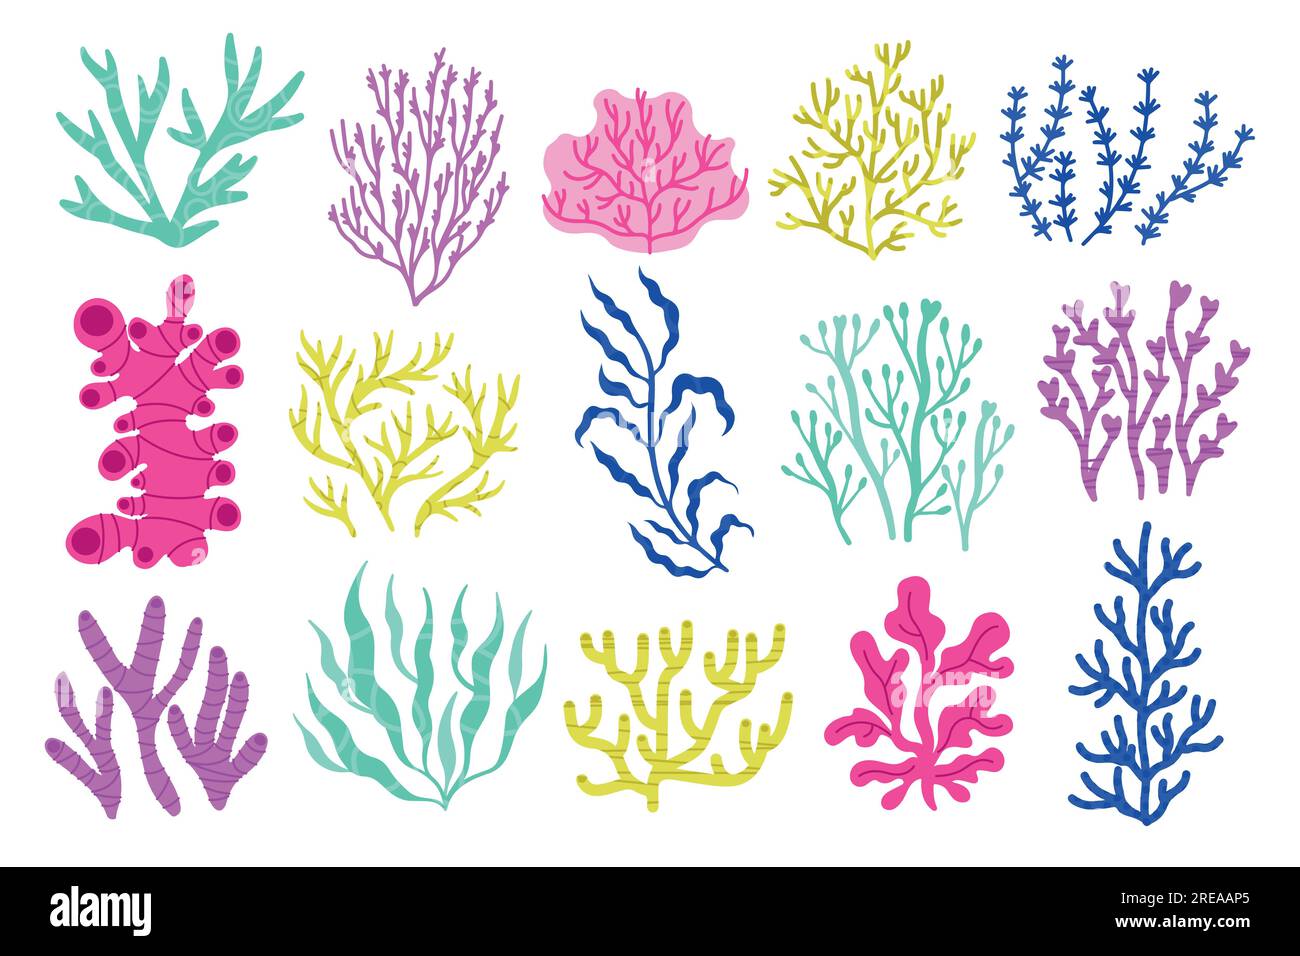 Algues marines et algues. Plantes sous-marines colorées de dessin animé, flore botanique marine exotique colorée, plantes de corail et d'eau. Ensemble isolé de vecteur Illustration de Vecteur